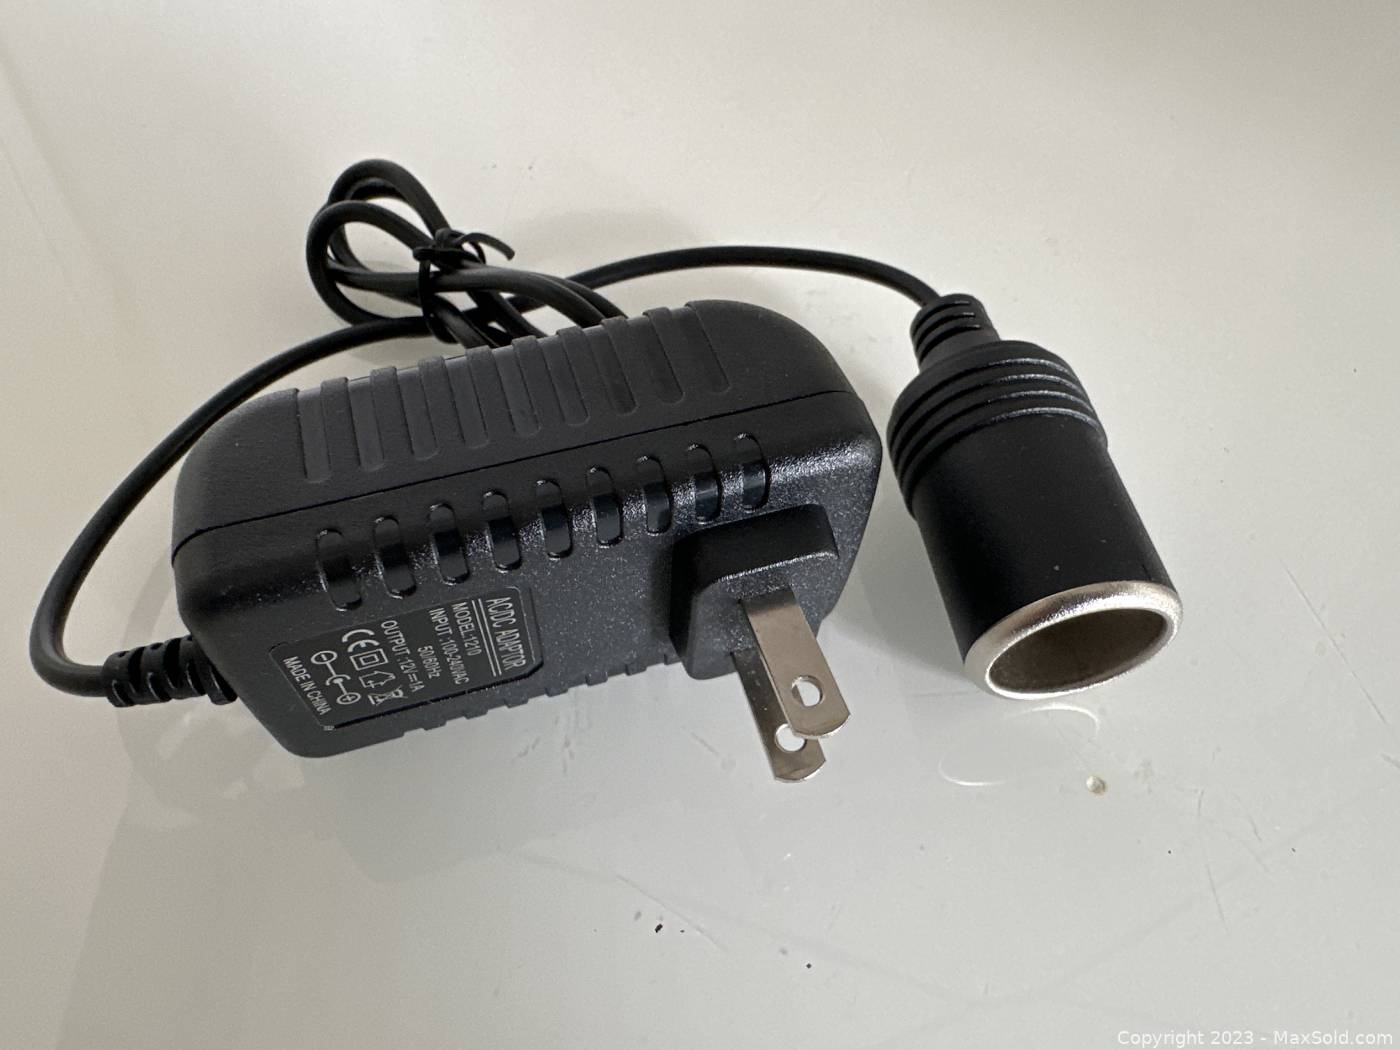 Accessories - Car Cigarette Lighter Socket Adapter (220v AC to 12V DC)